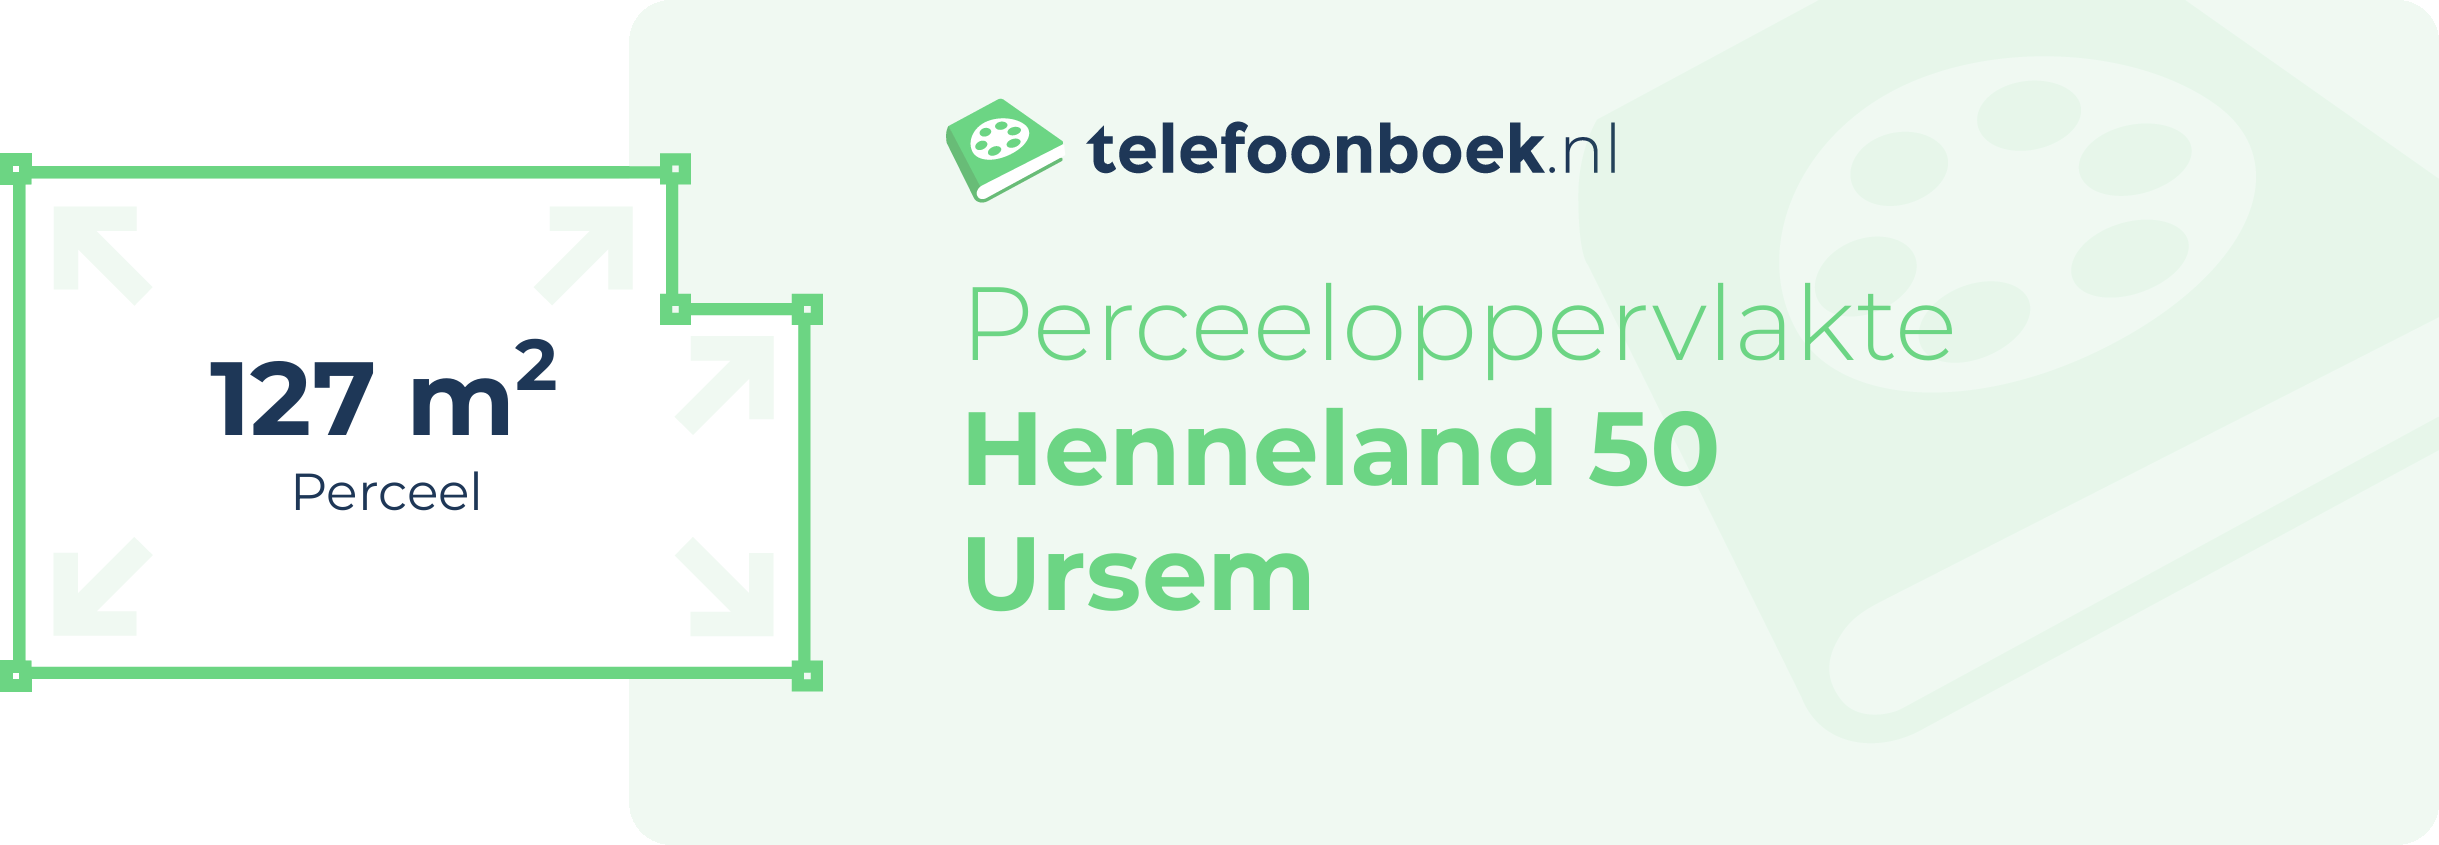 Perceeloppervlakte Henneland 50 Ursem